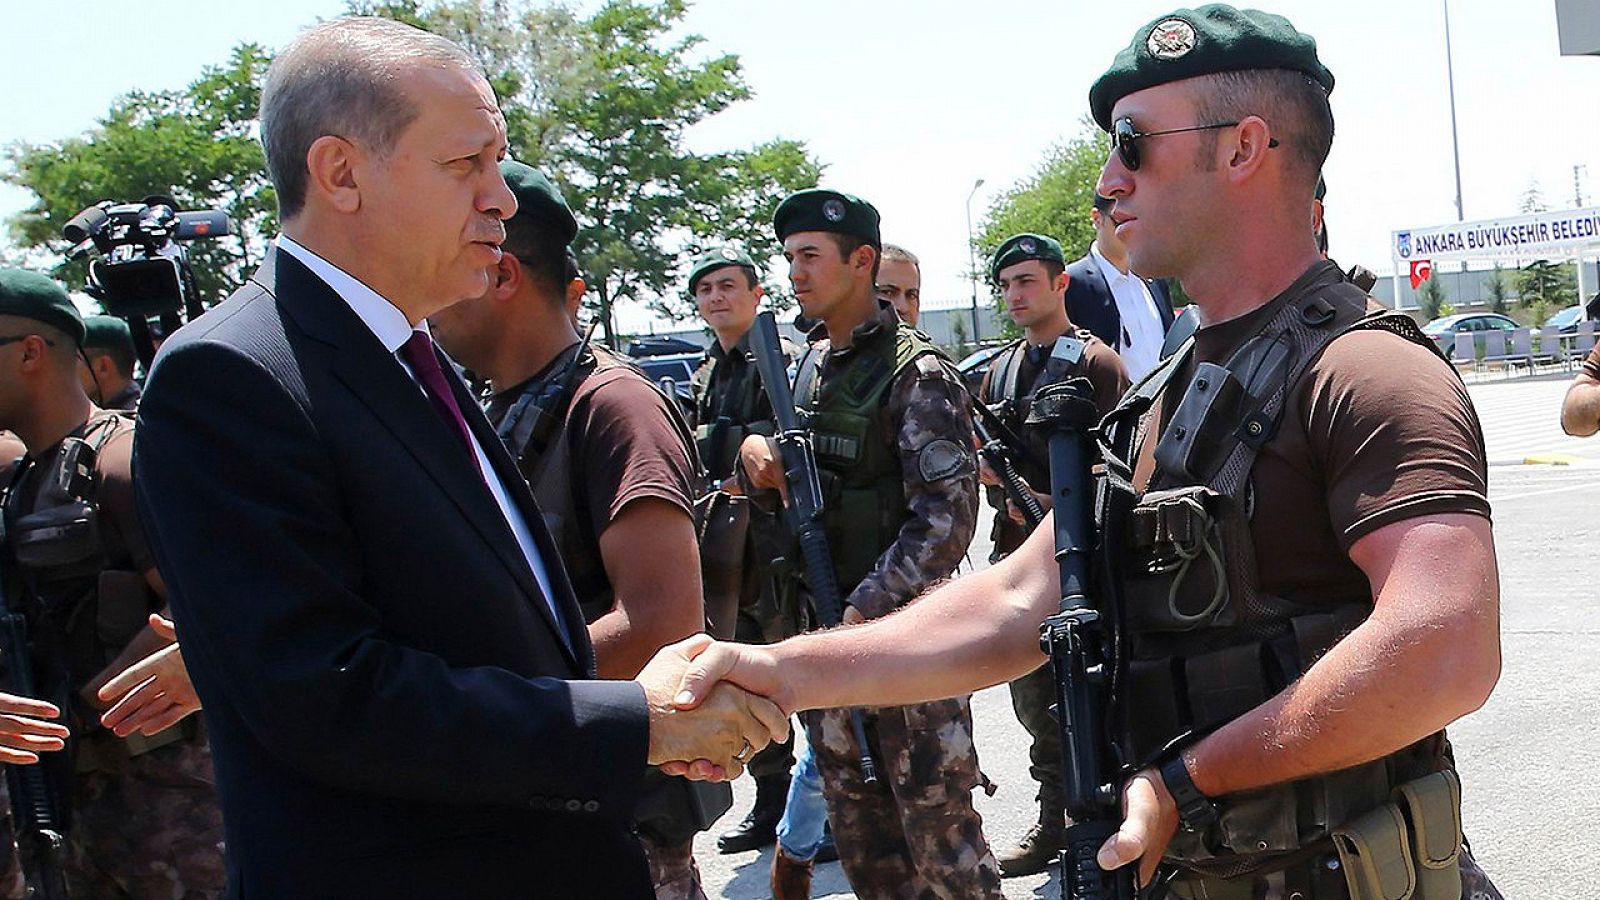 El presidente turco, Recep Tayyip Erdogan, saluda a un agente de Operaciones Especiales de la Policía el pasado 29 de julio, en Ankara. AFP PHOTO / Oficina de Prensa de la Presidencia turca / KAYHAN OZER